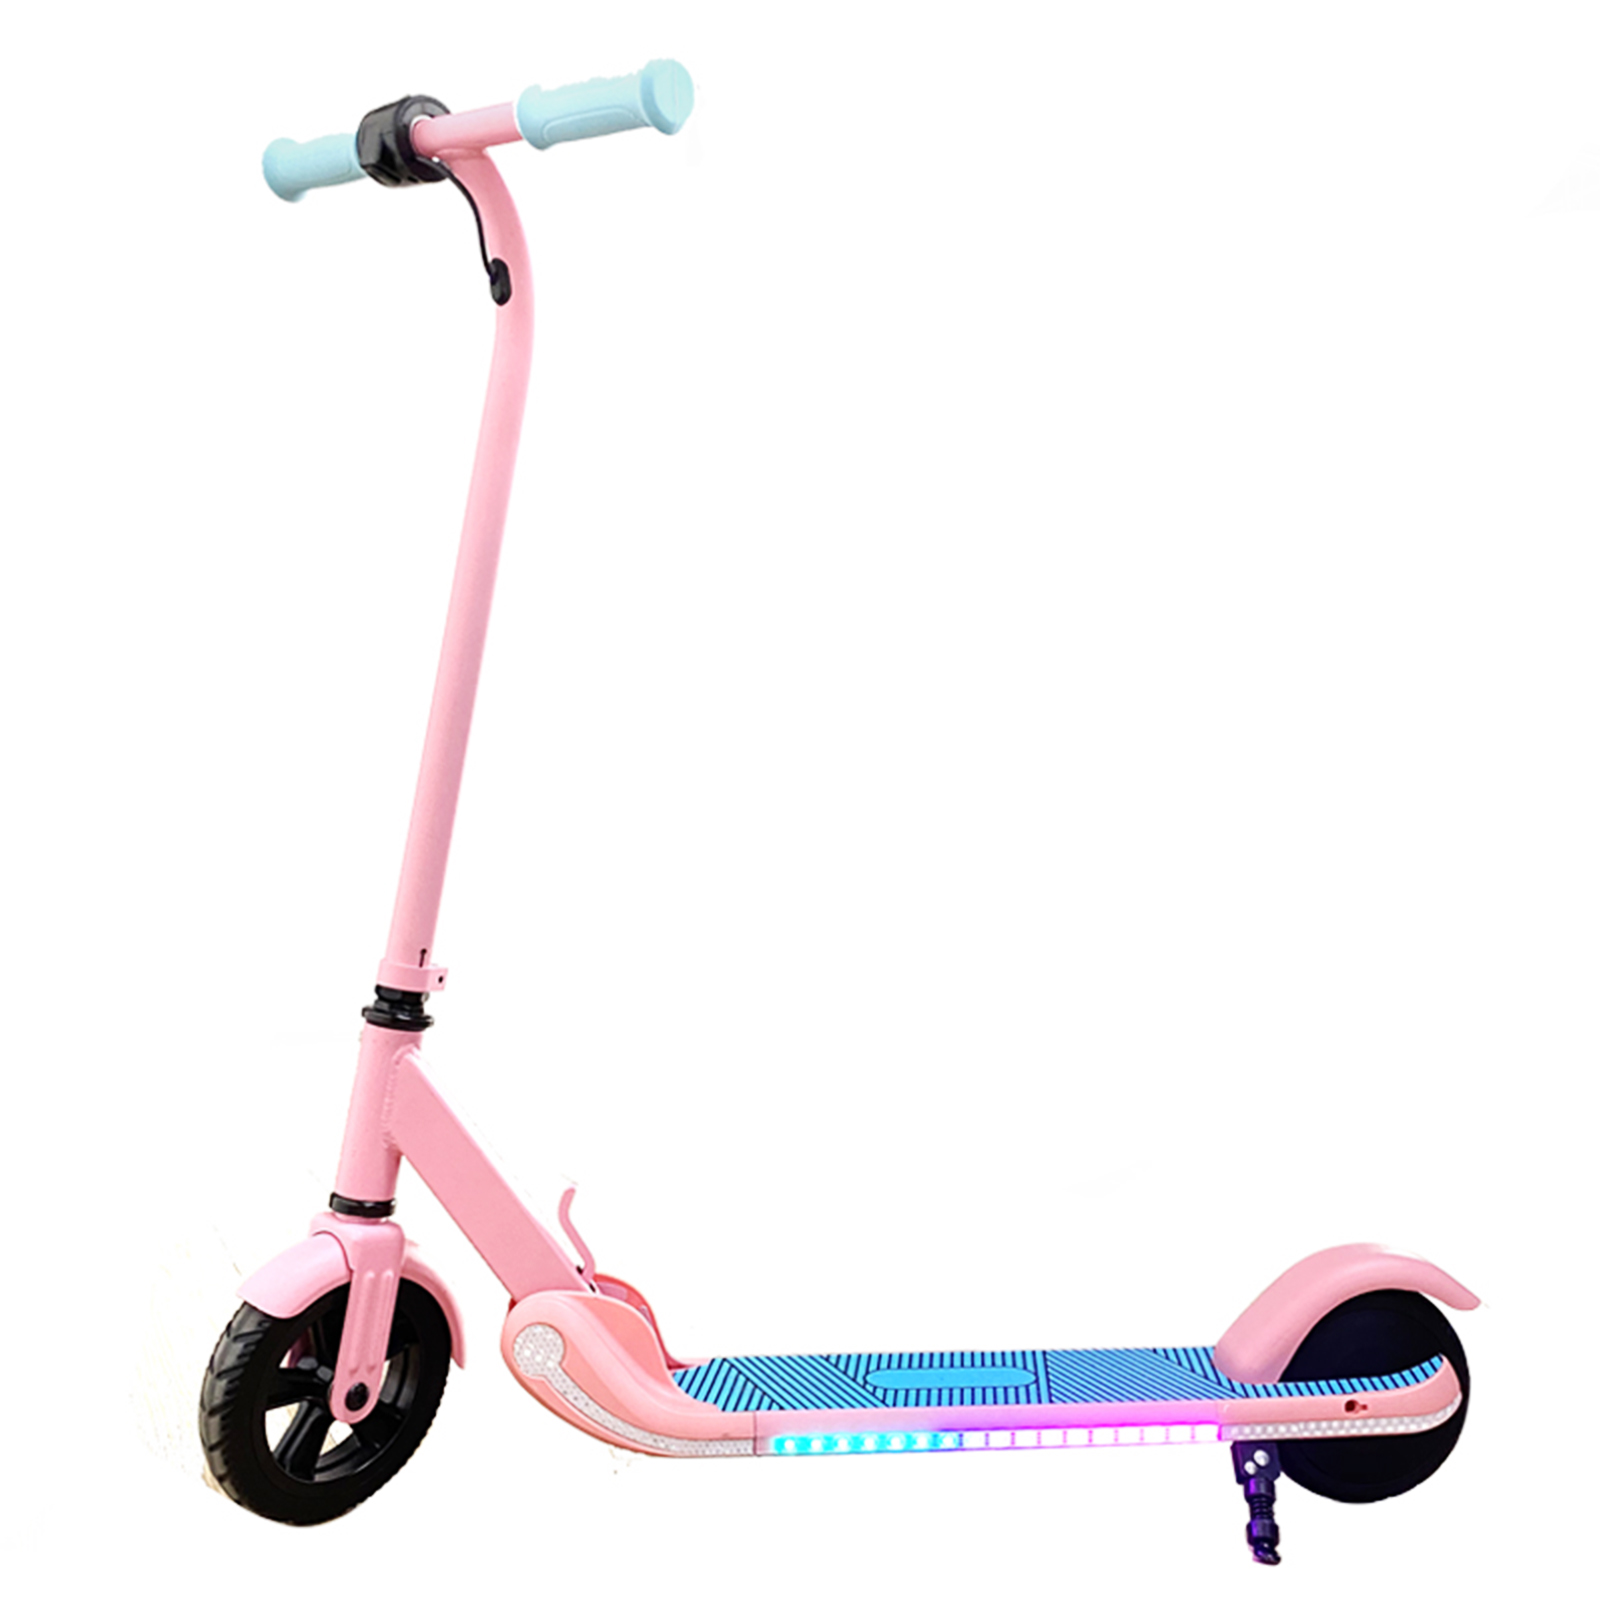 Elektro Scooter 7 Zoll Pink Elektroroller Faltbarer E-Roller Kinder altbar E-Scooter Klappbar Aluminium Roller